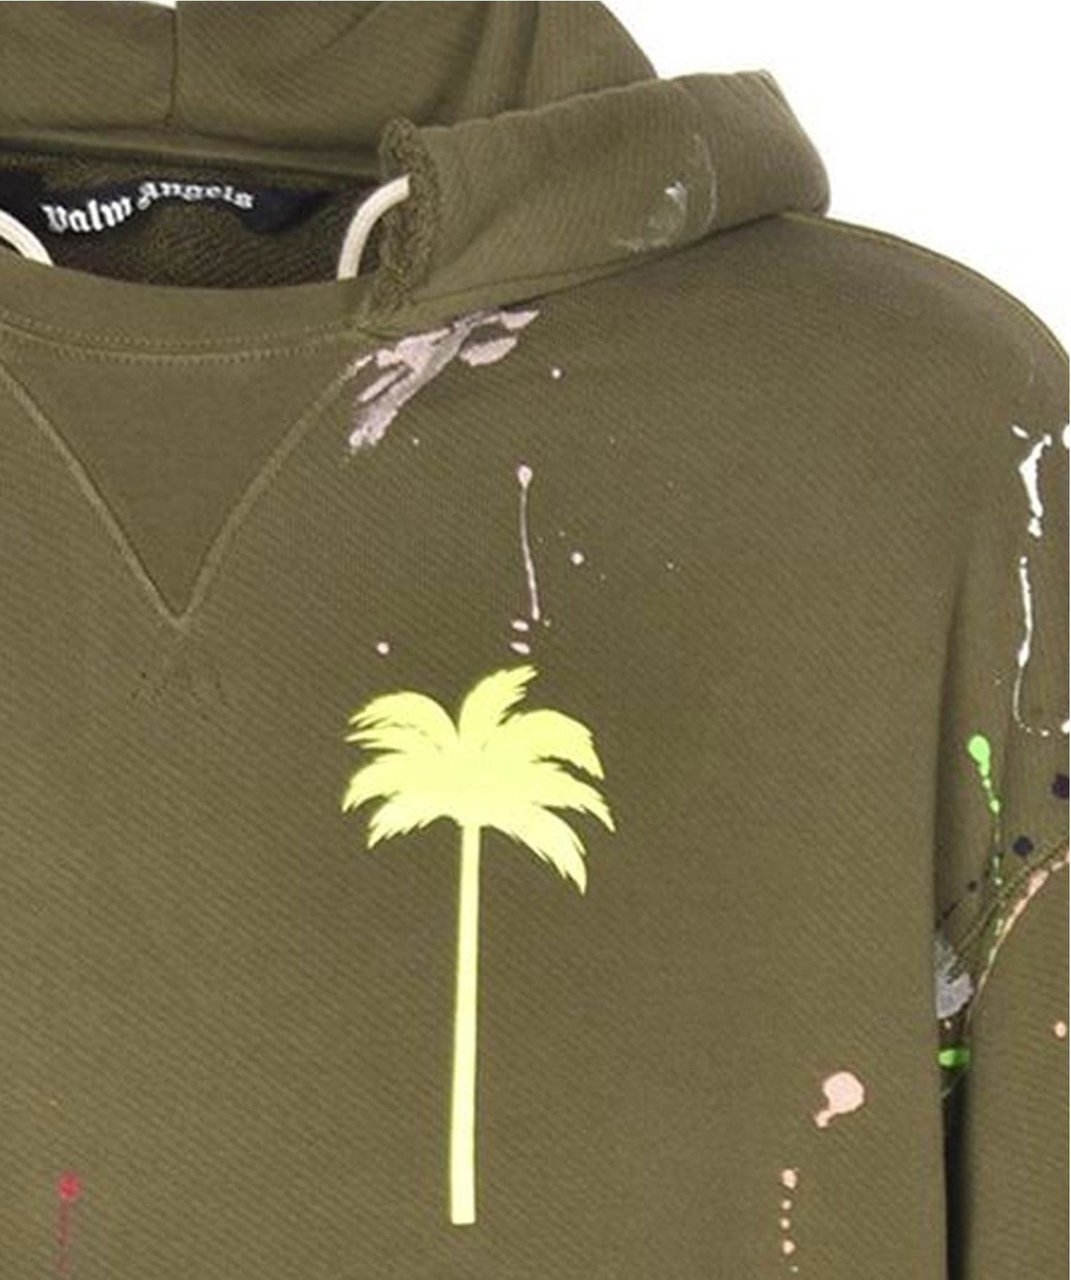 Palm Angels Palm Angels Printed Sweatshirt Groen